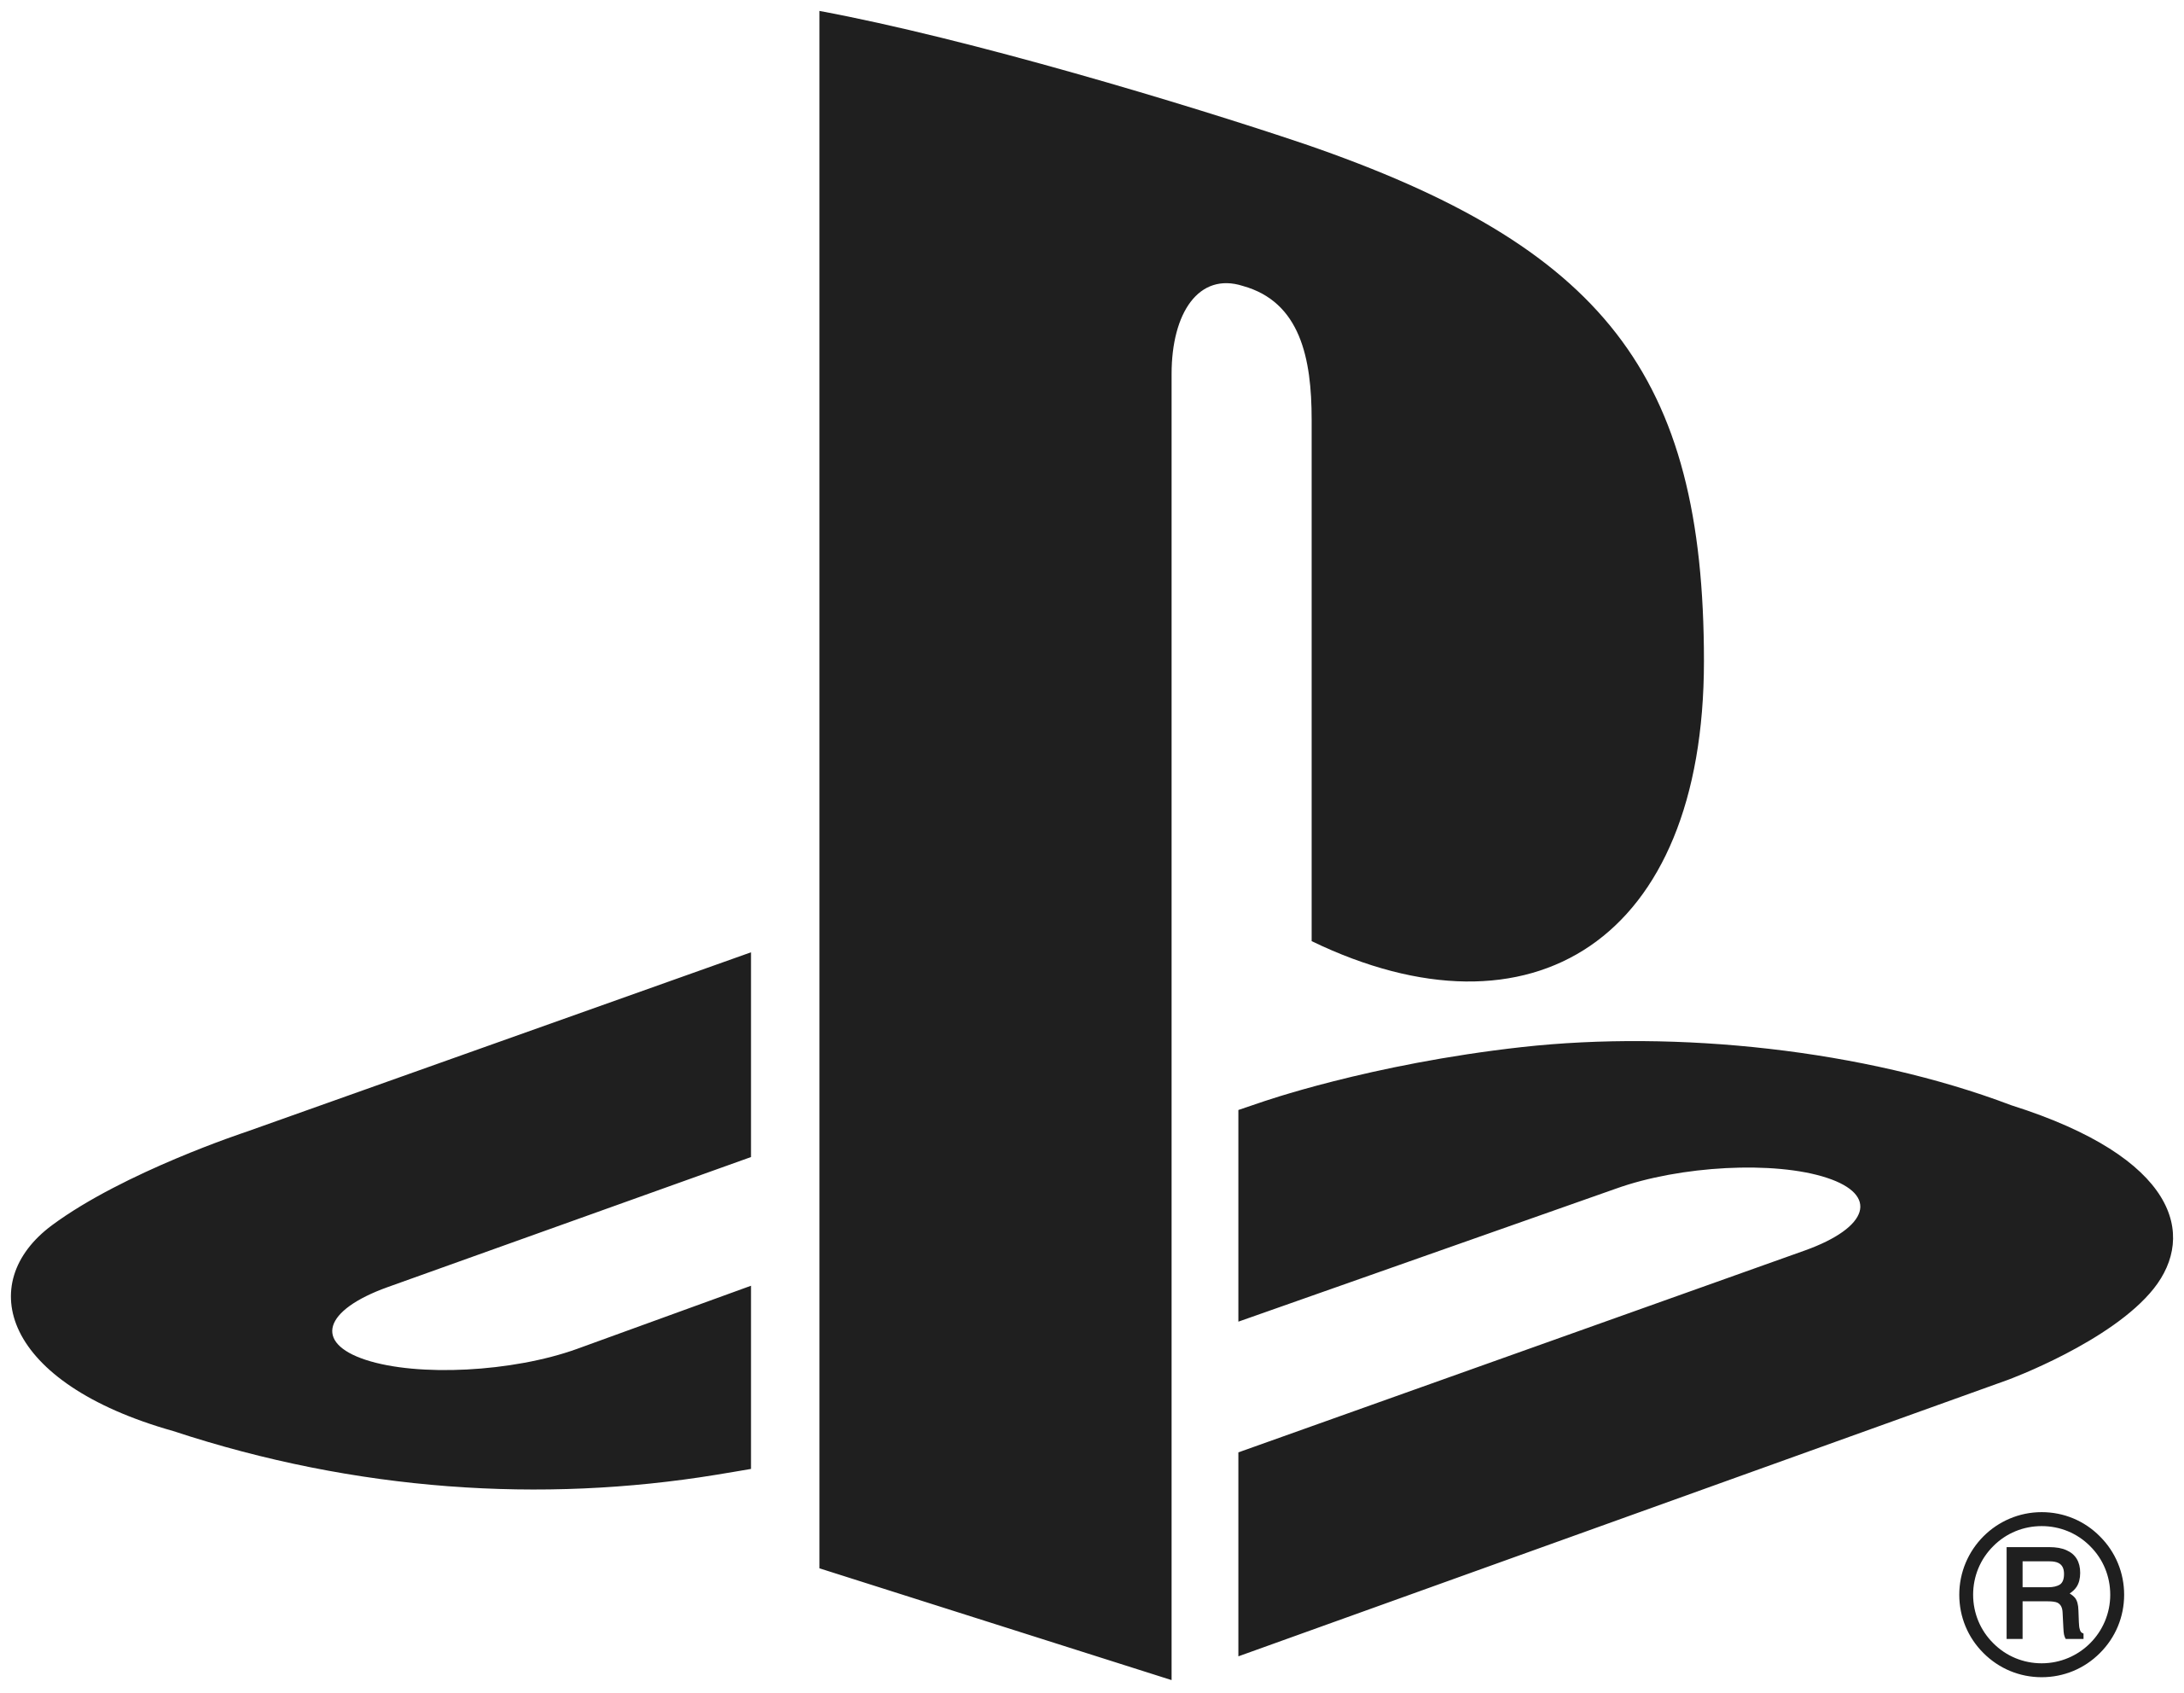 Sony - Playstation 5, Konsol tilbehør og Playstation Legetøj geekd geekdgaming geekd.dk sony playstation 5 sony playstation 4 ps4 ps3 ps5 geekd playstation konsol tilbehør legetøj